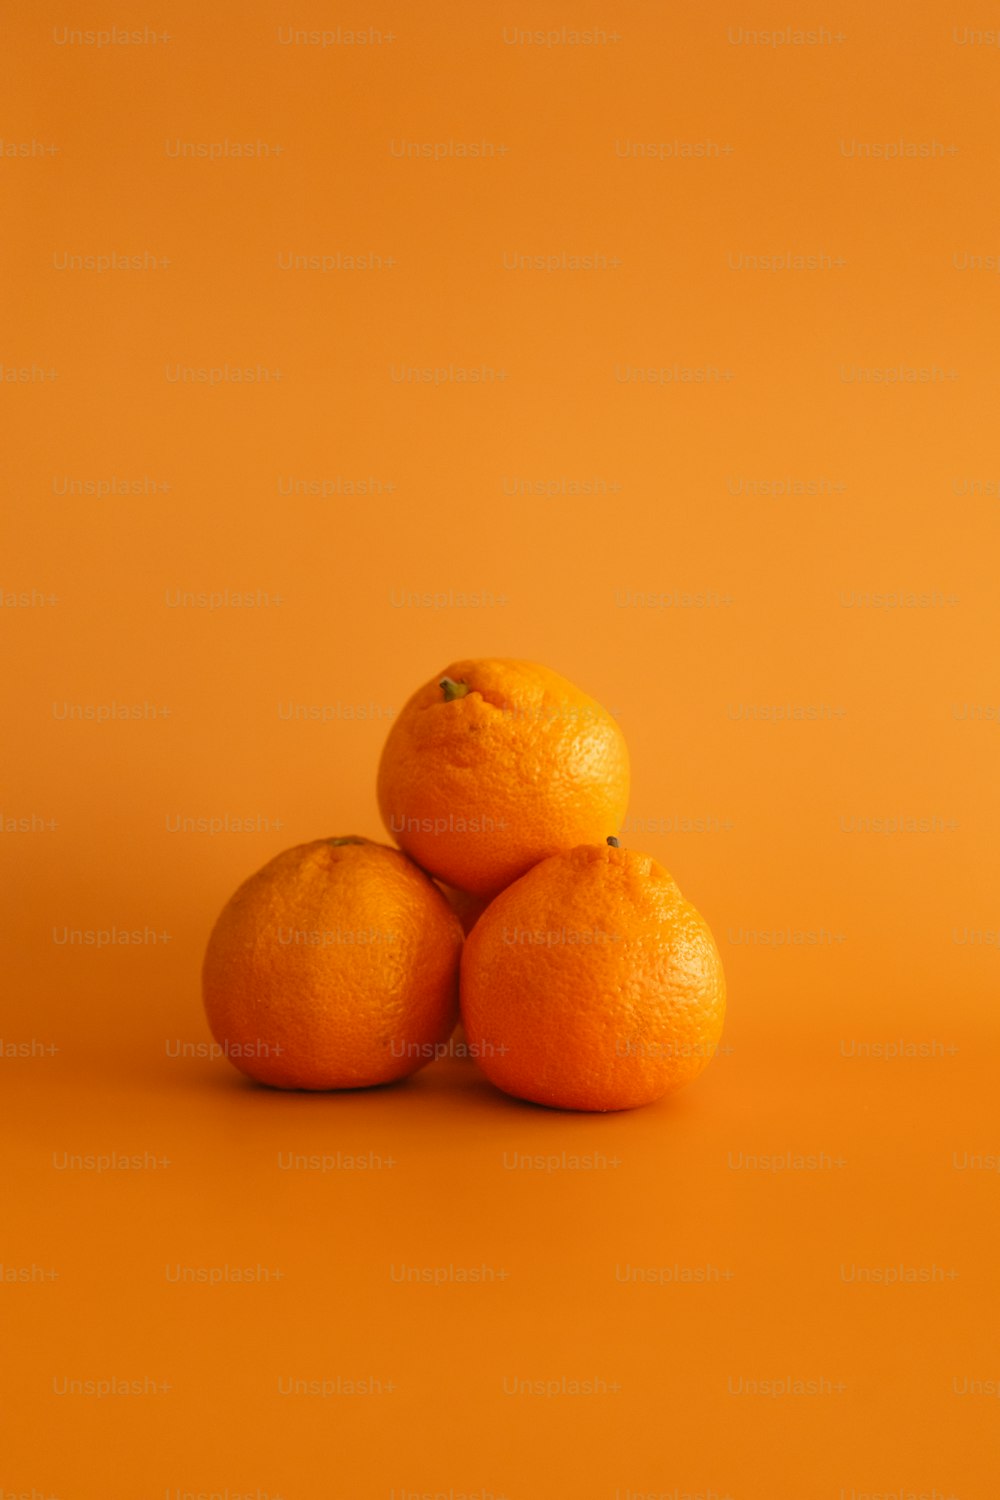 3つのオレ��ンジが重なり合って座っている